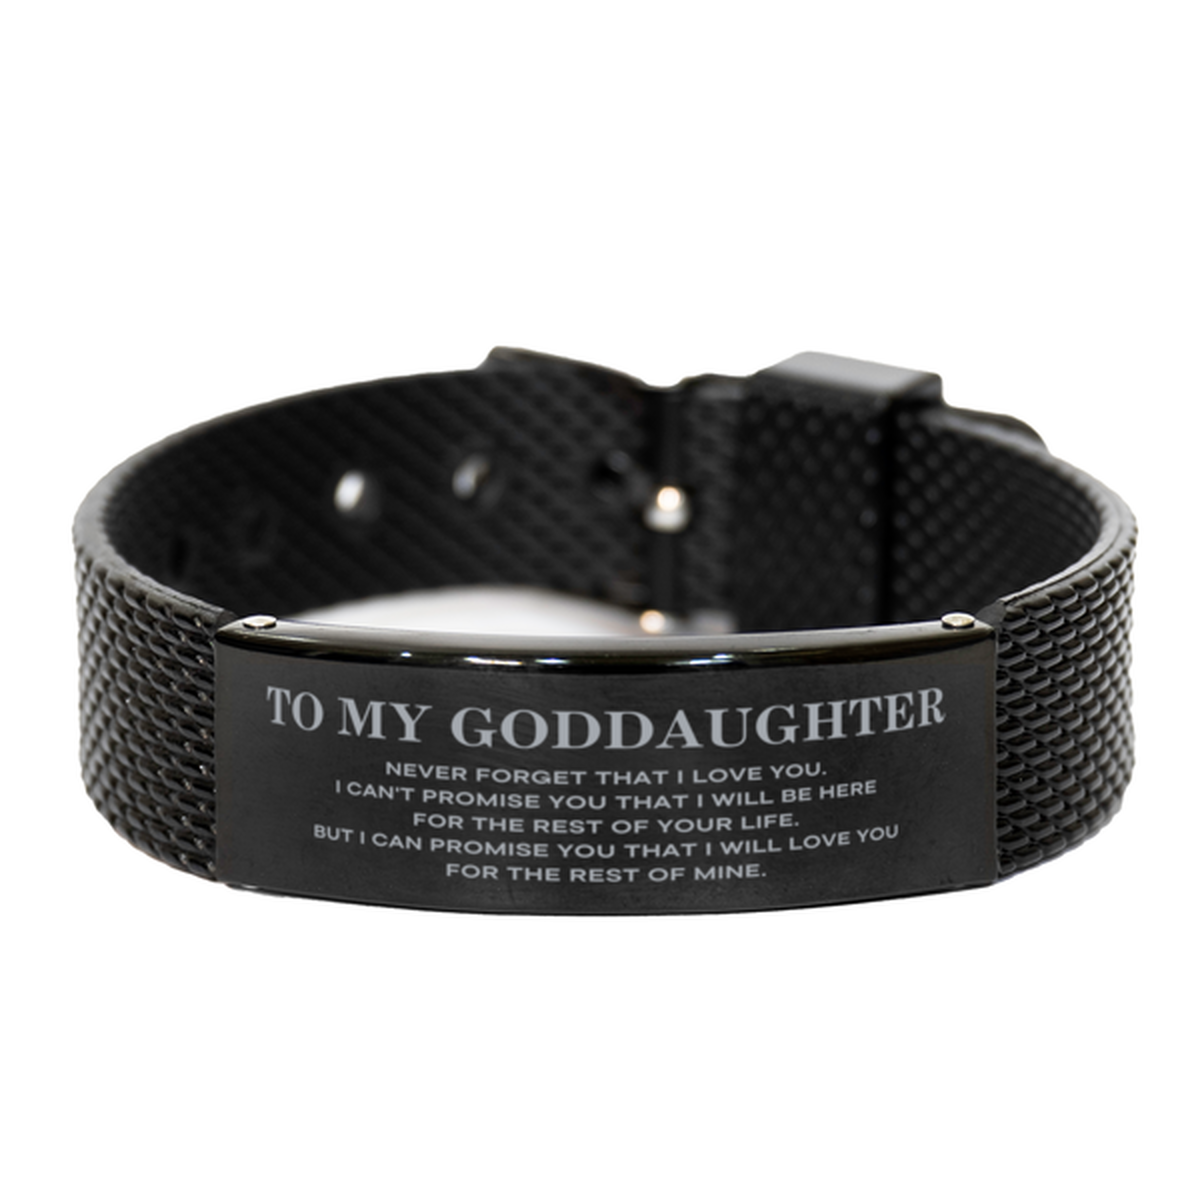 To My Goddaughter Gifts, I will love you for the rest of mine, Love Goddaughter Bracelet, Birthday Christmas Unique Black Shark Mesh Bracelet For Goddaughter